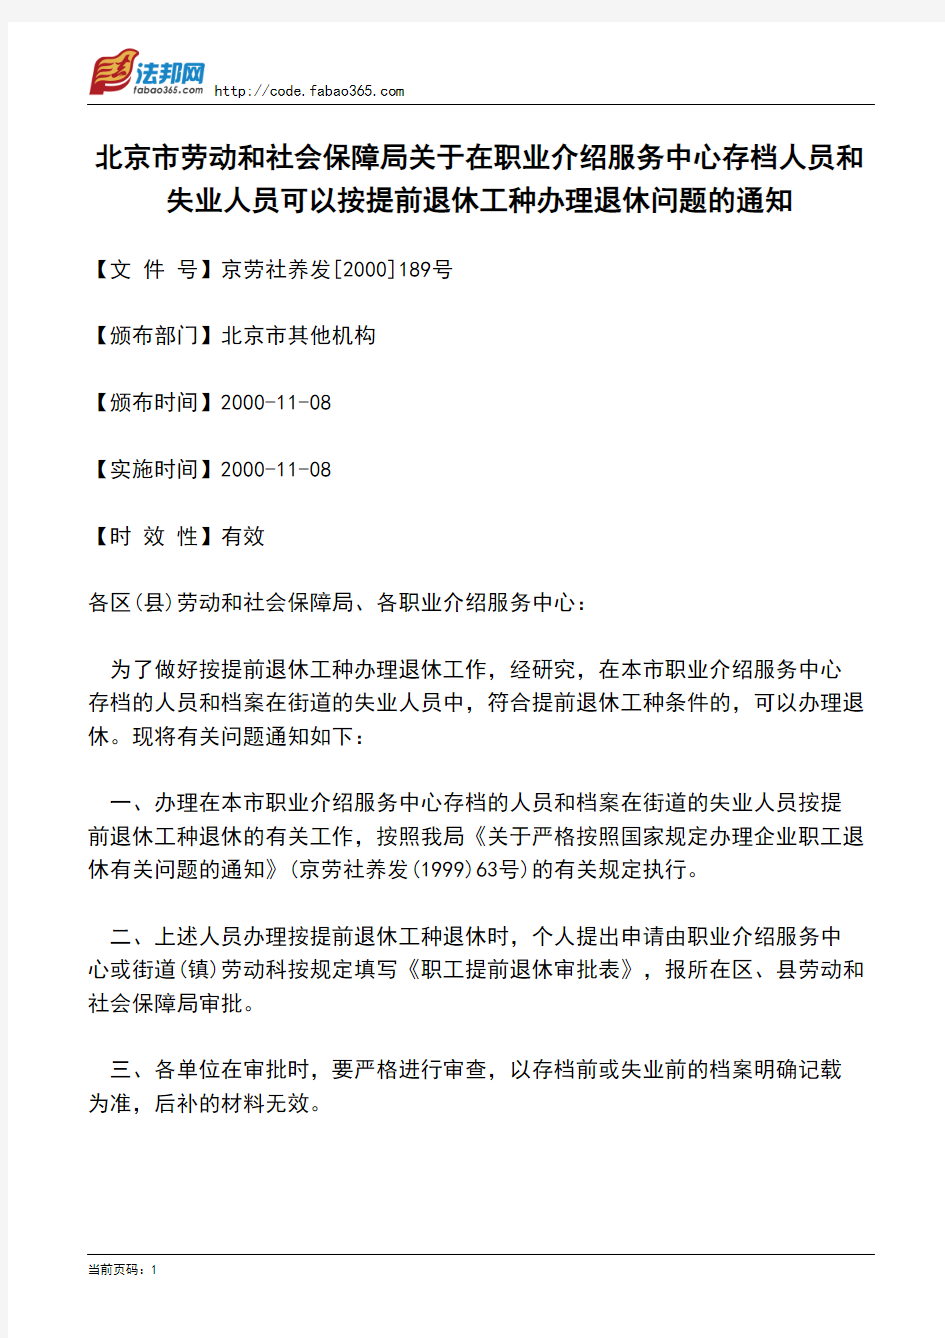 北京市劳动和社会保障局关于在职业介绍服务中心存档人员和失业人员可以按提前退休工种办理退休问题的通知